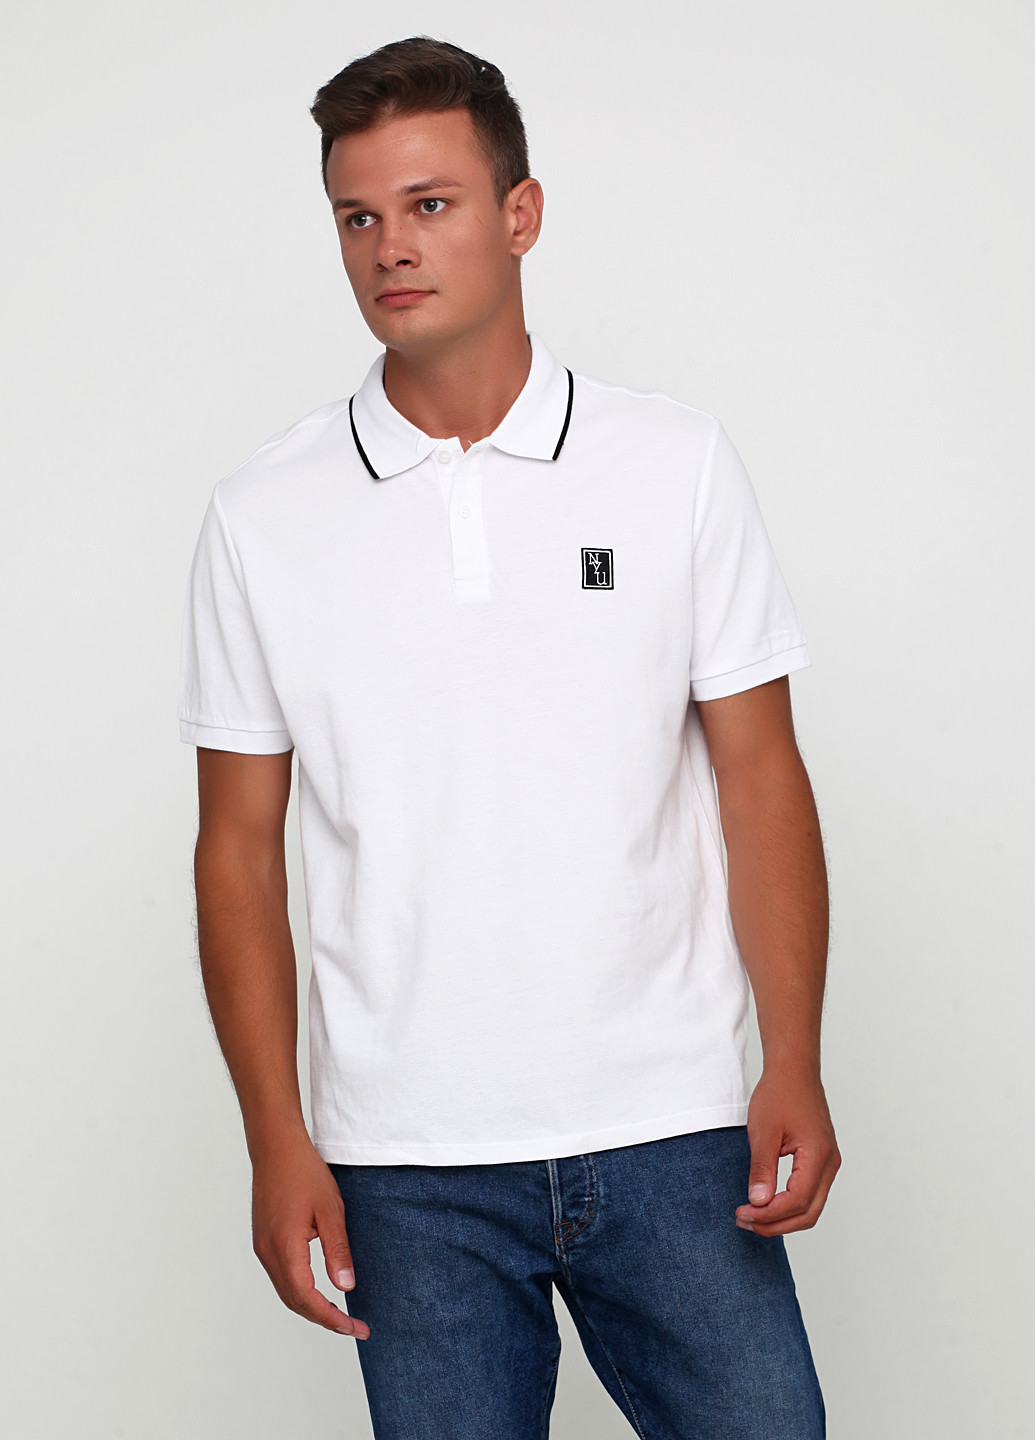 Белая футболка-поло для мужчин H&M с надписью